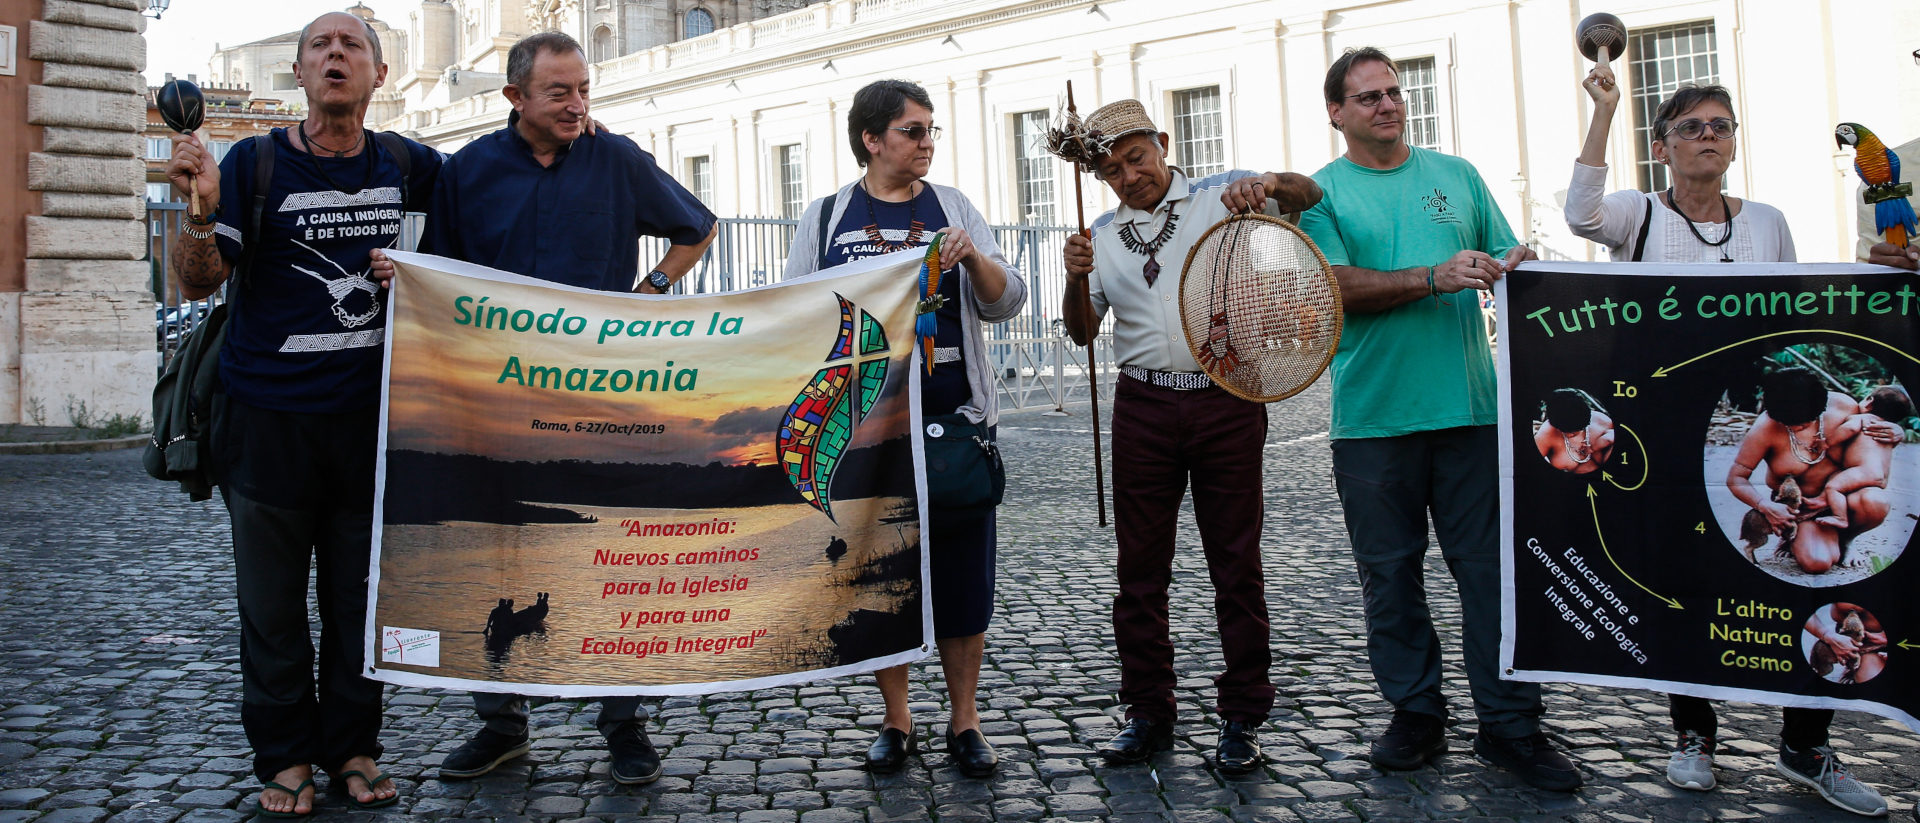 Menschen mit Plakaten singen vor dem Vatikan zum Abschluss der Amazonas-Bischofssynode am 26. Oktober 2019.